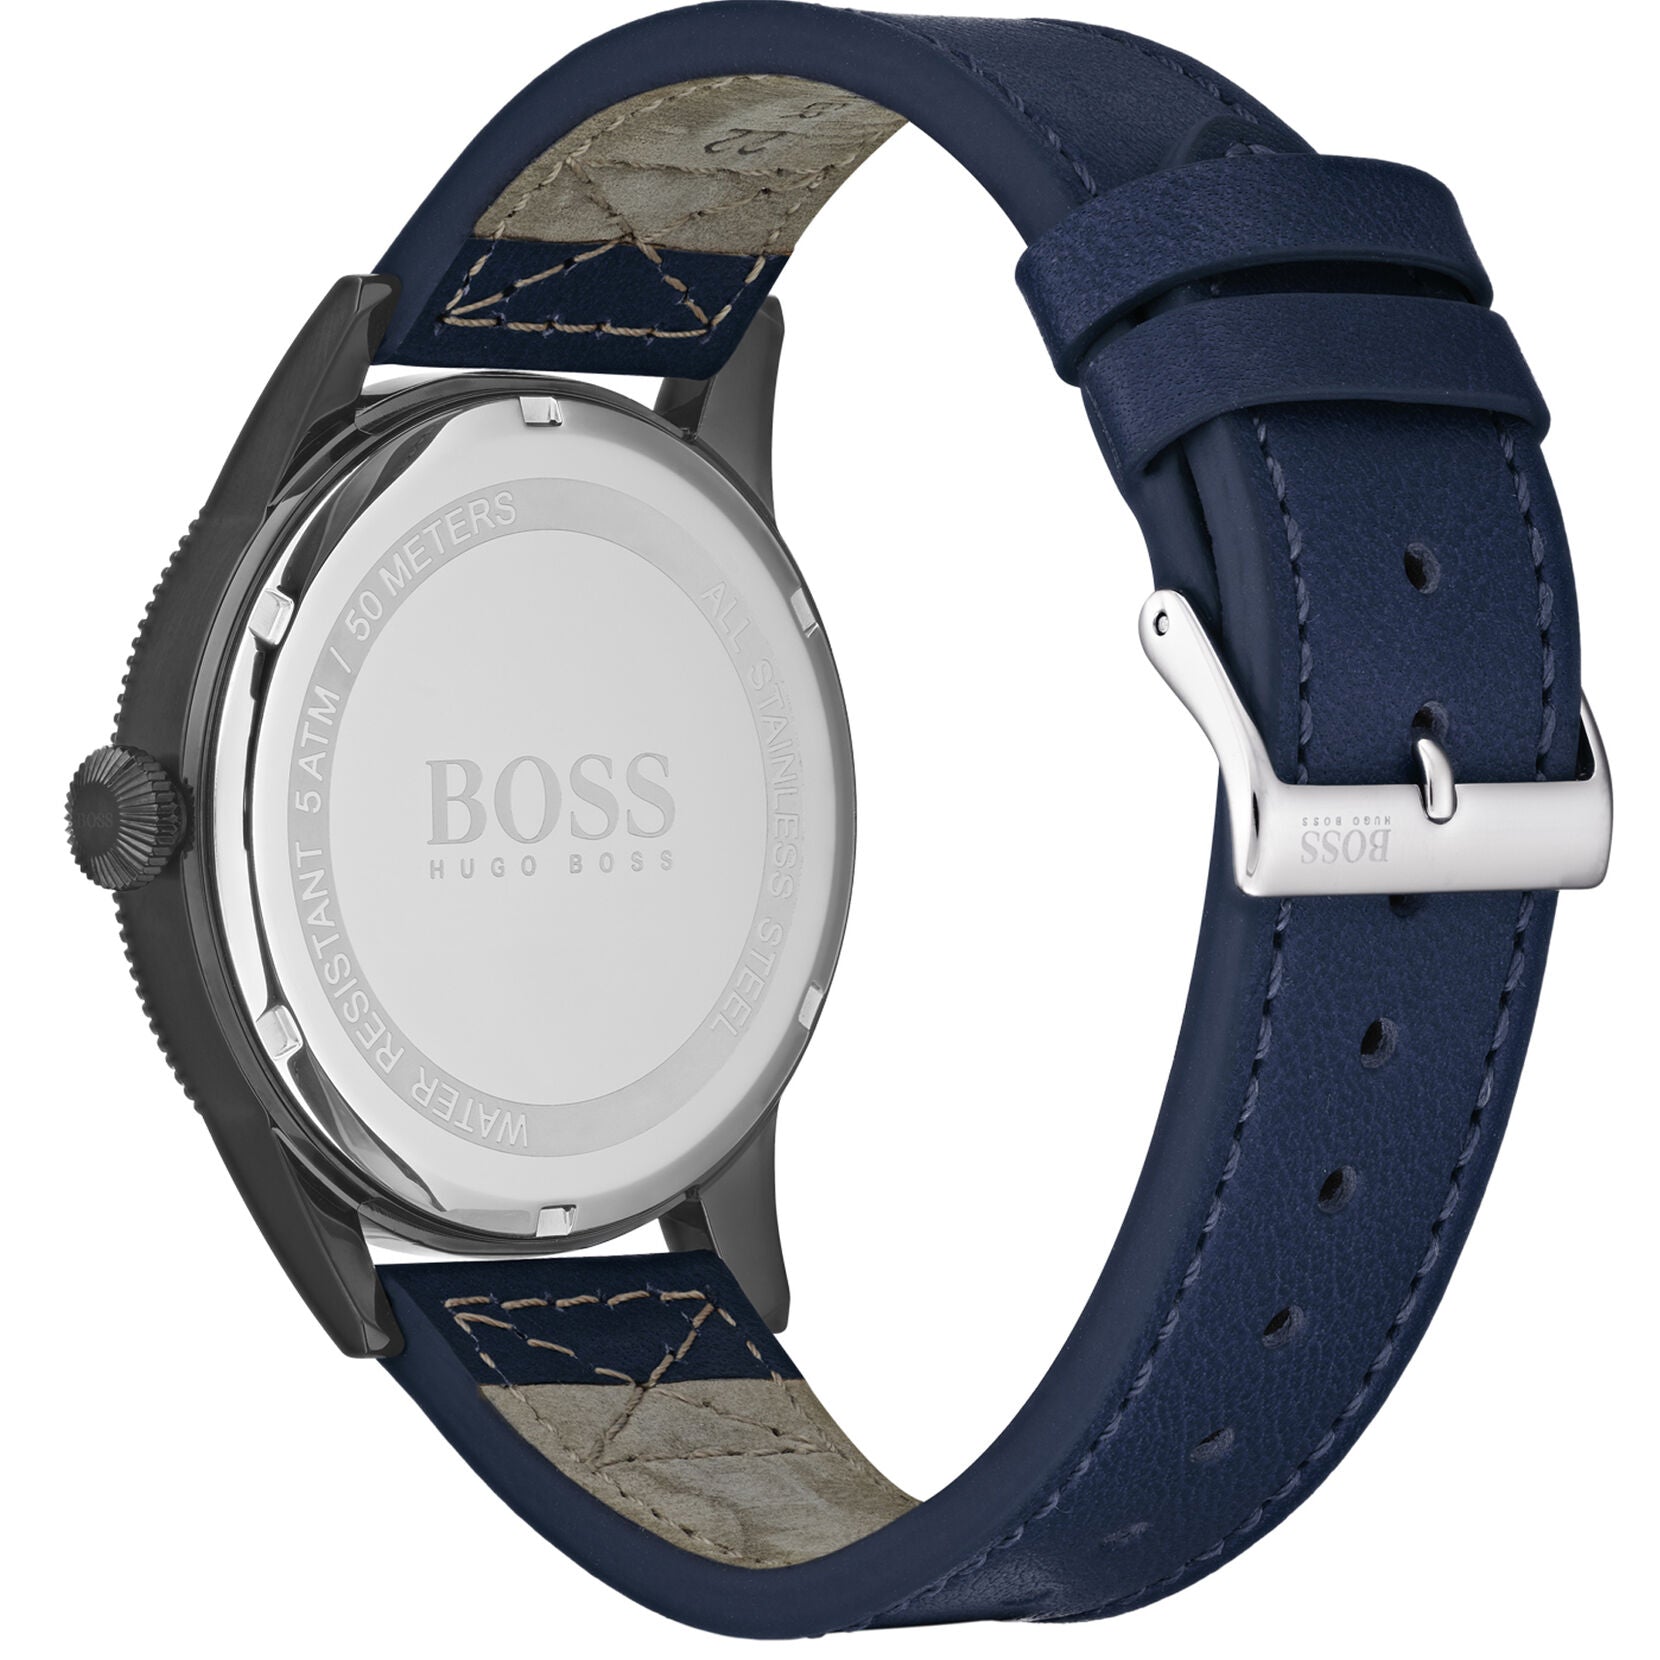 Hugo Boss Hugo Boss Analogue Quartz Dial Men's Watch 1513684